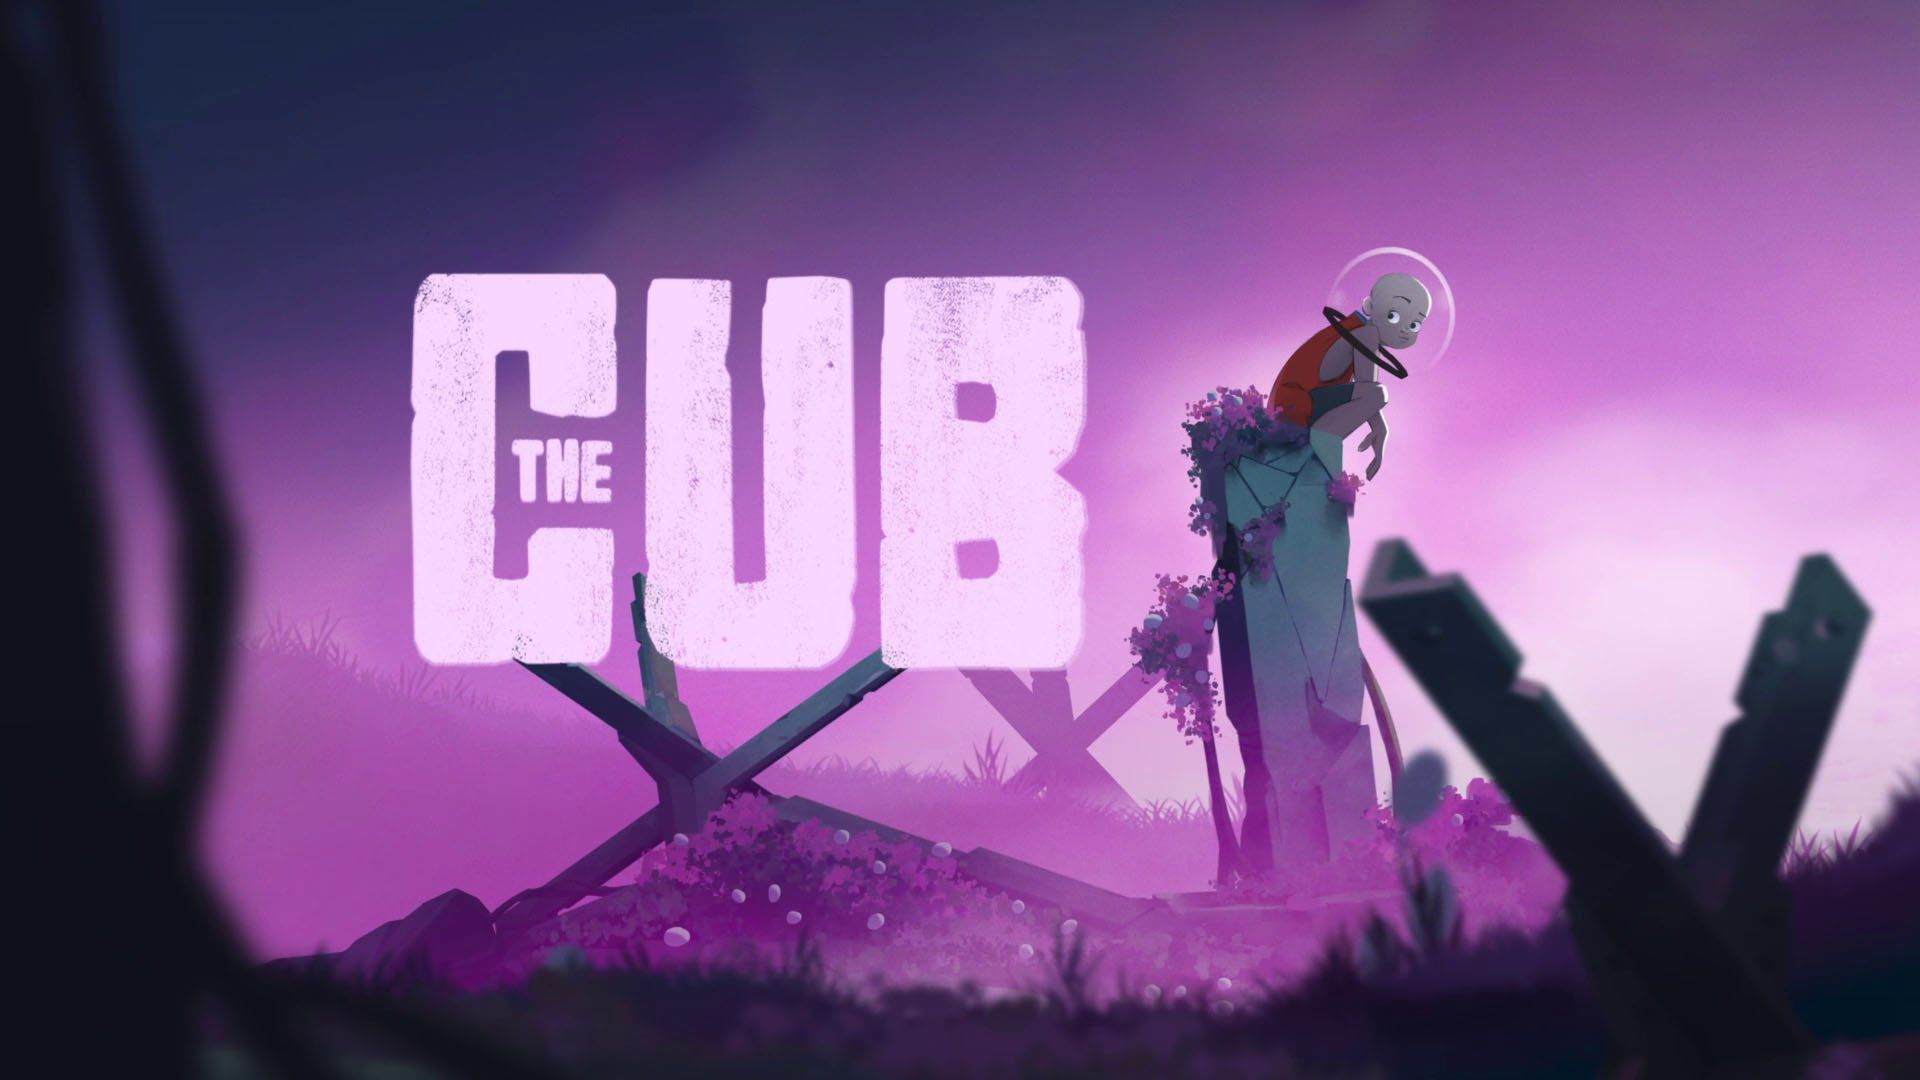 The Cub, il platform post-apocalittico uscirà il 19 gennaio